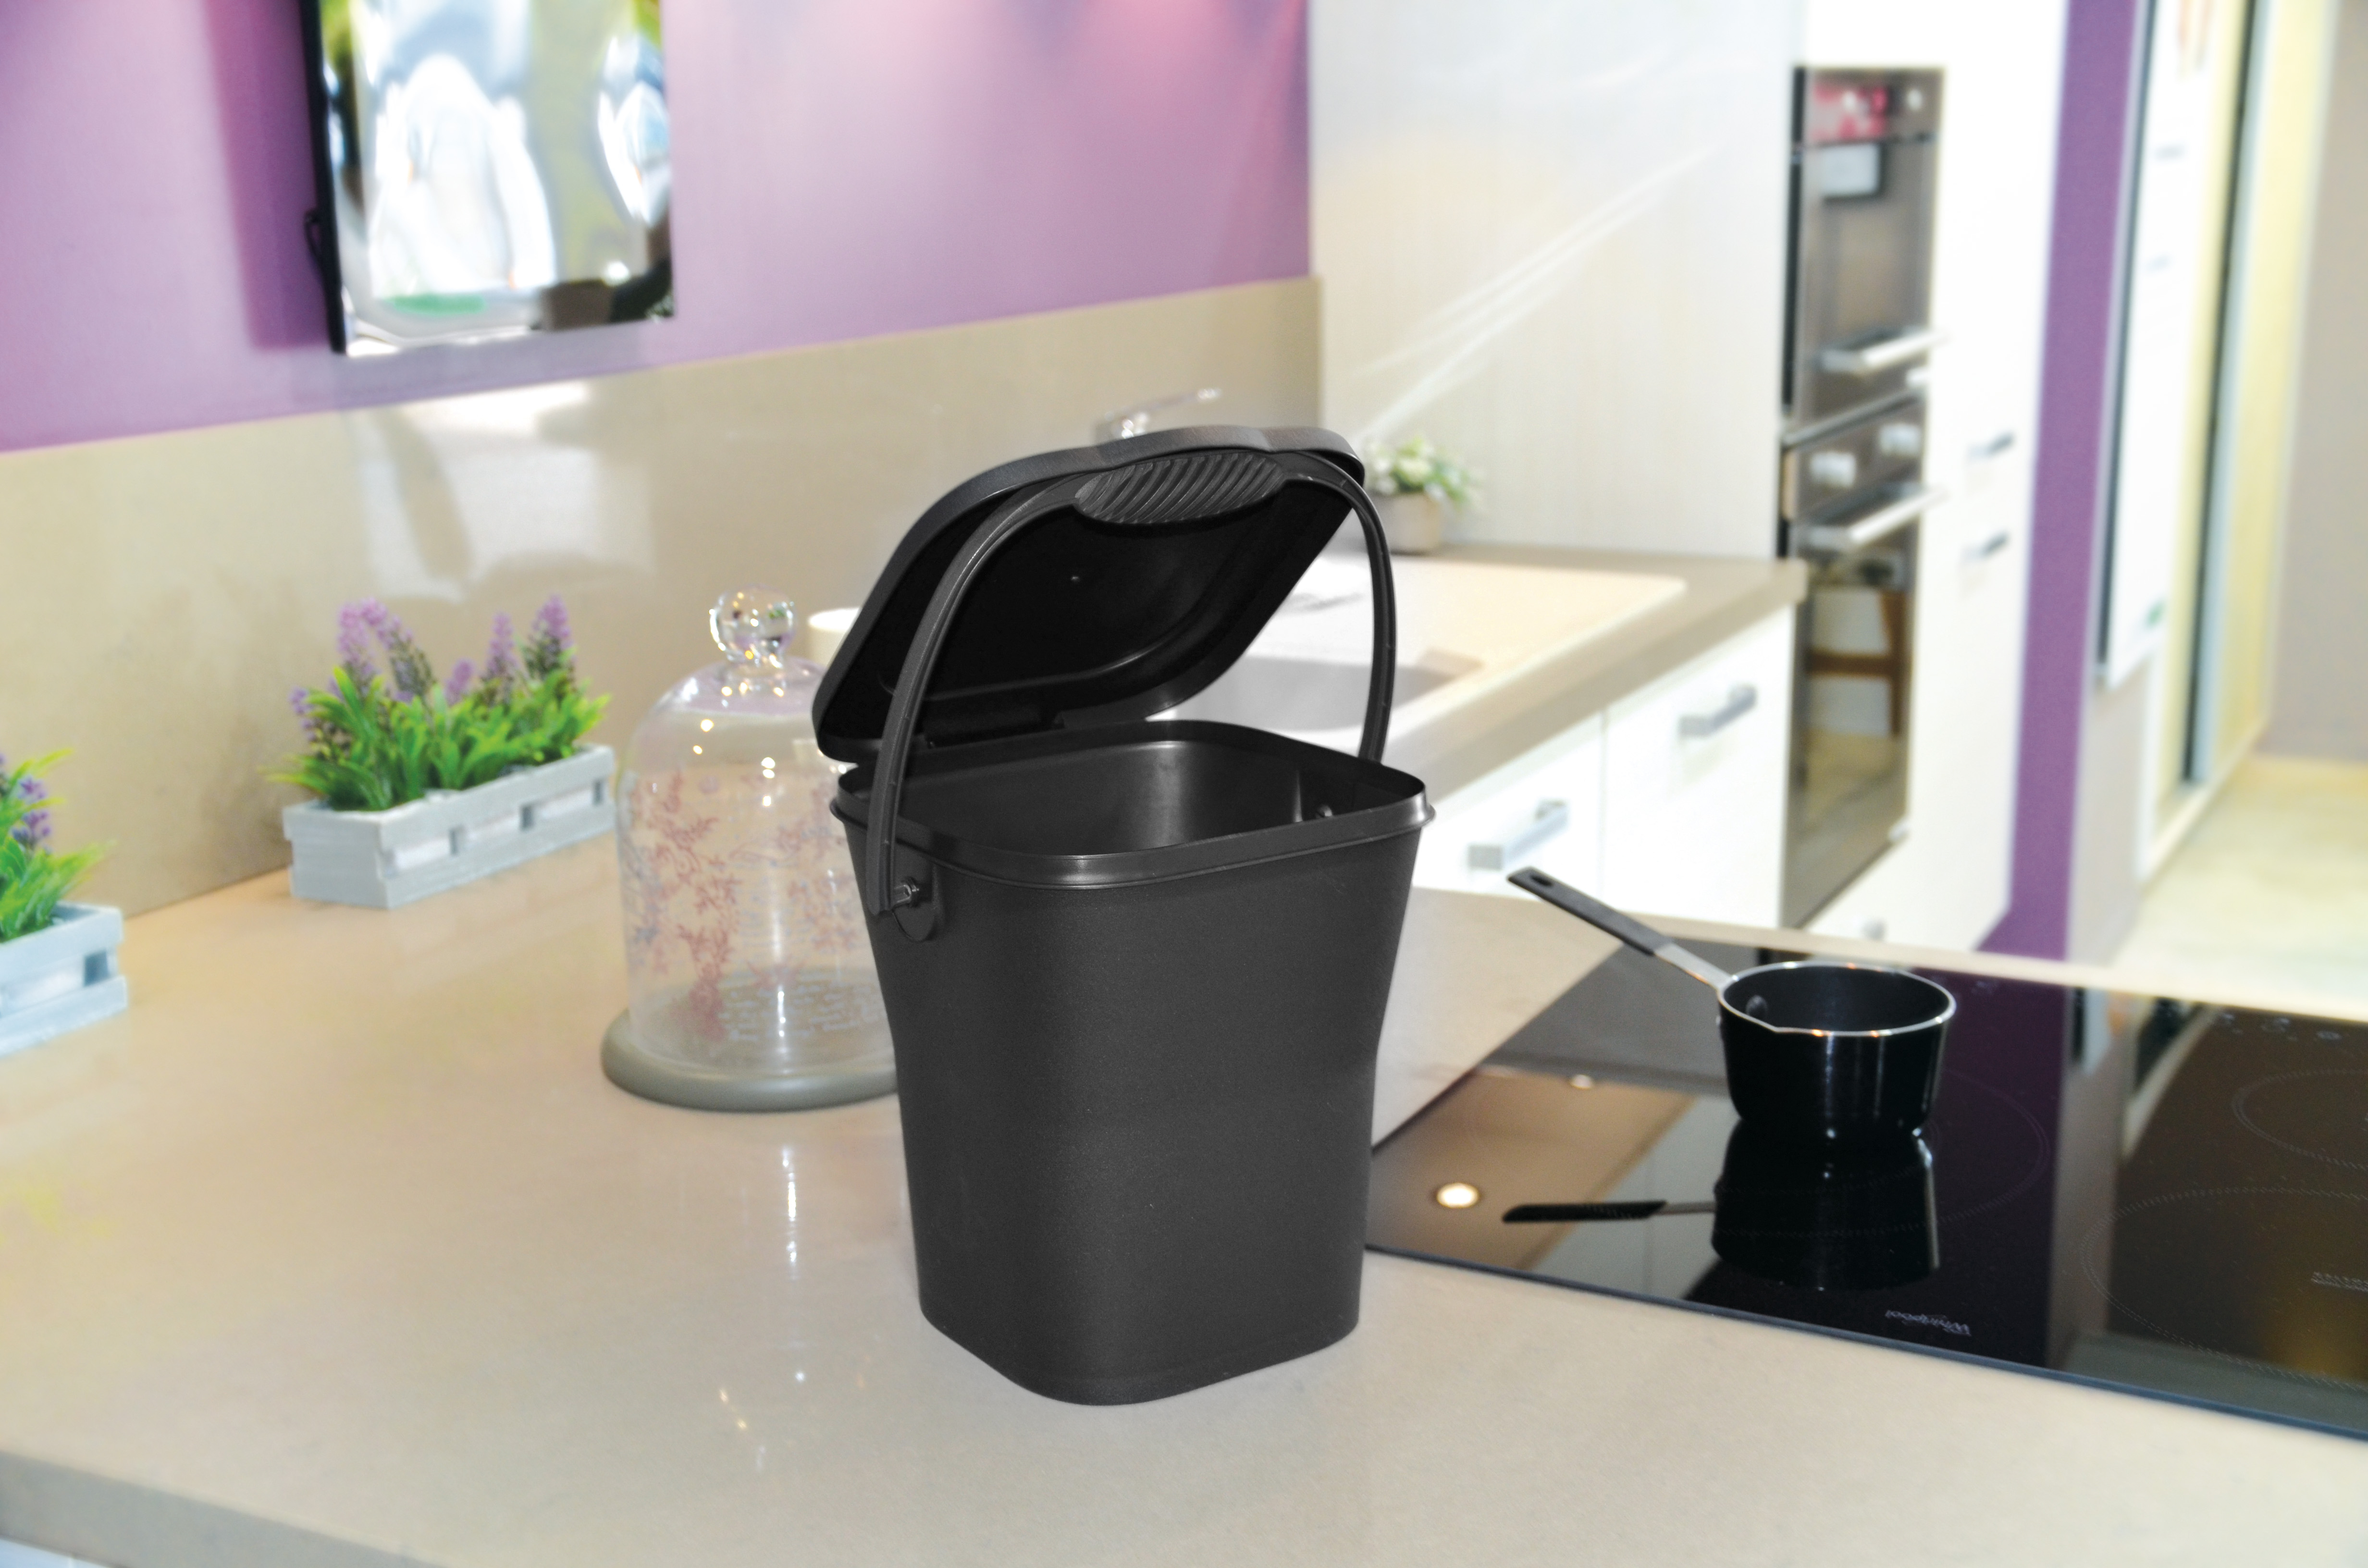 Seau de compostage pour déchets de cuisine - 6,3 litres - Webshop